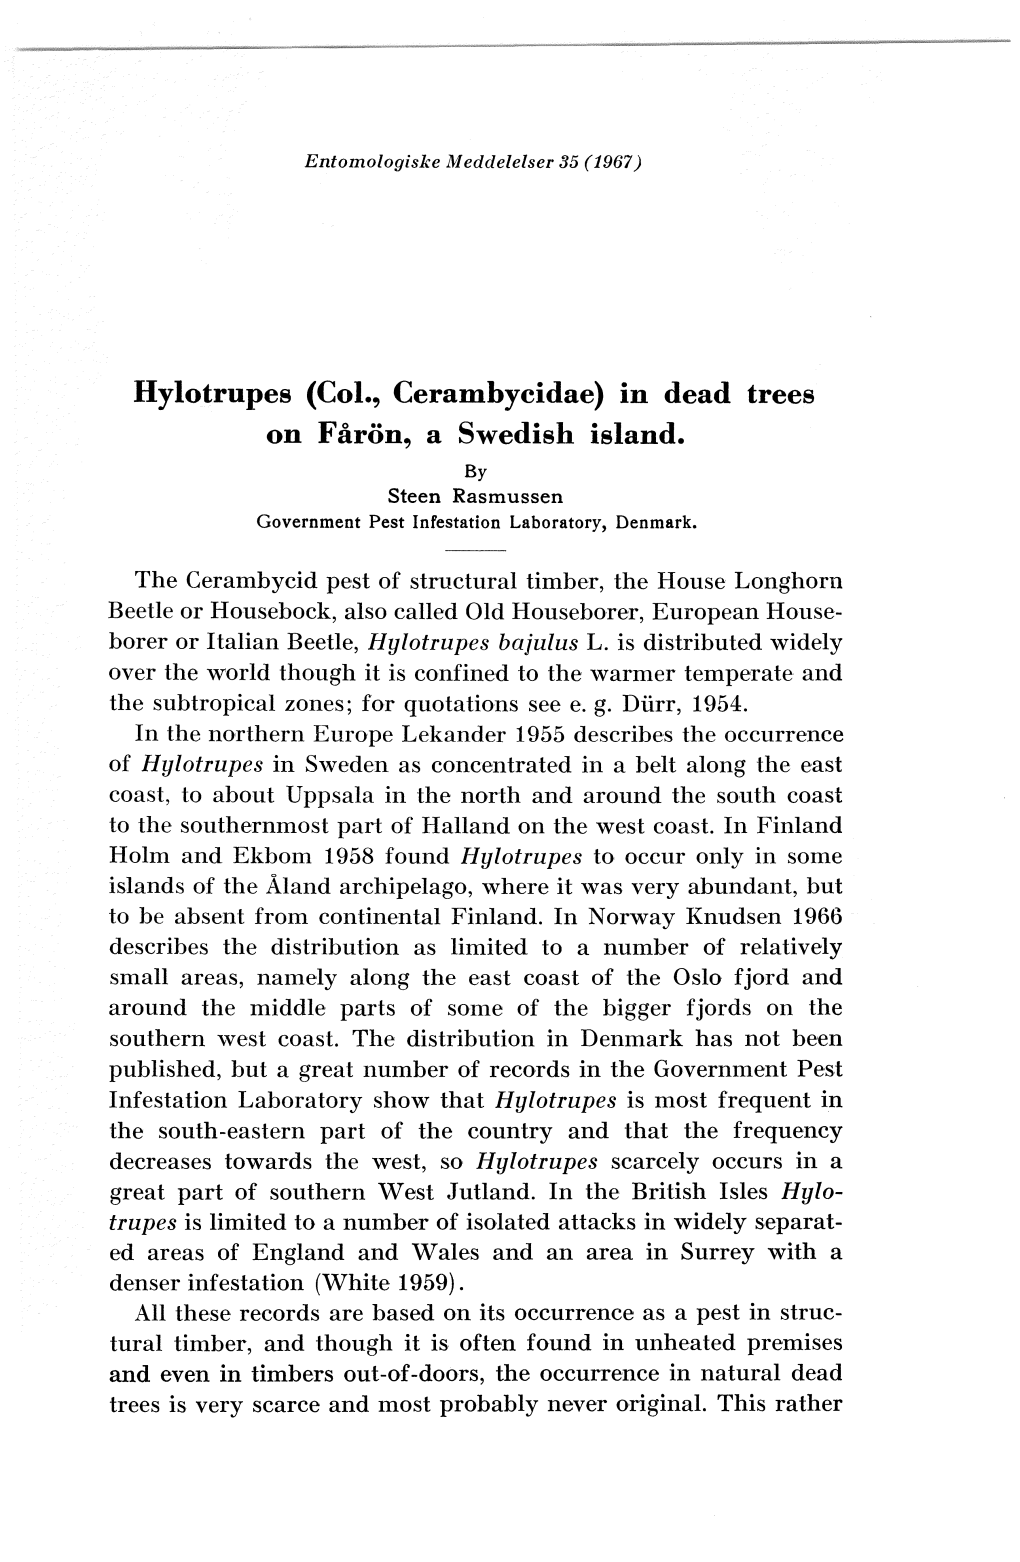 Hylotrupes (Col., Cerambycidae) in Dead Trees on Faron, a Swedish Island